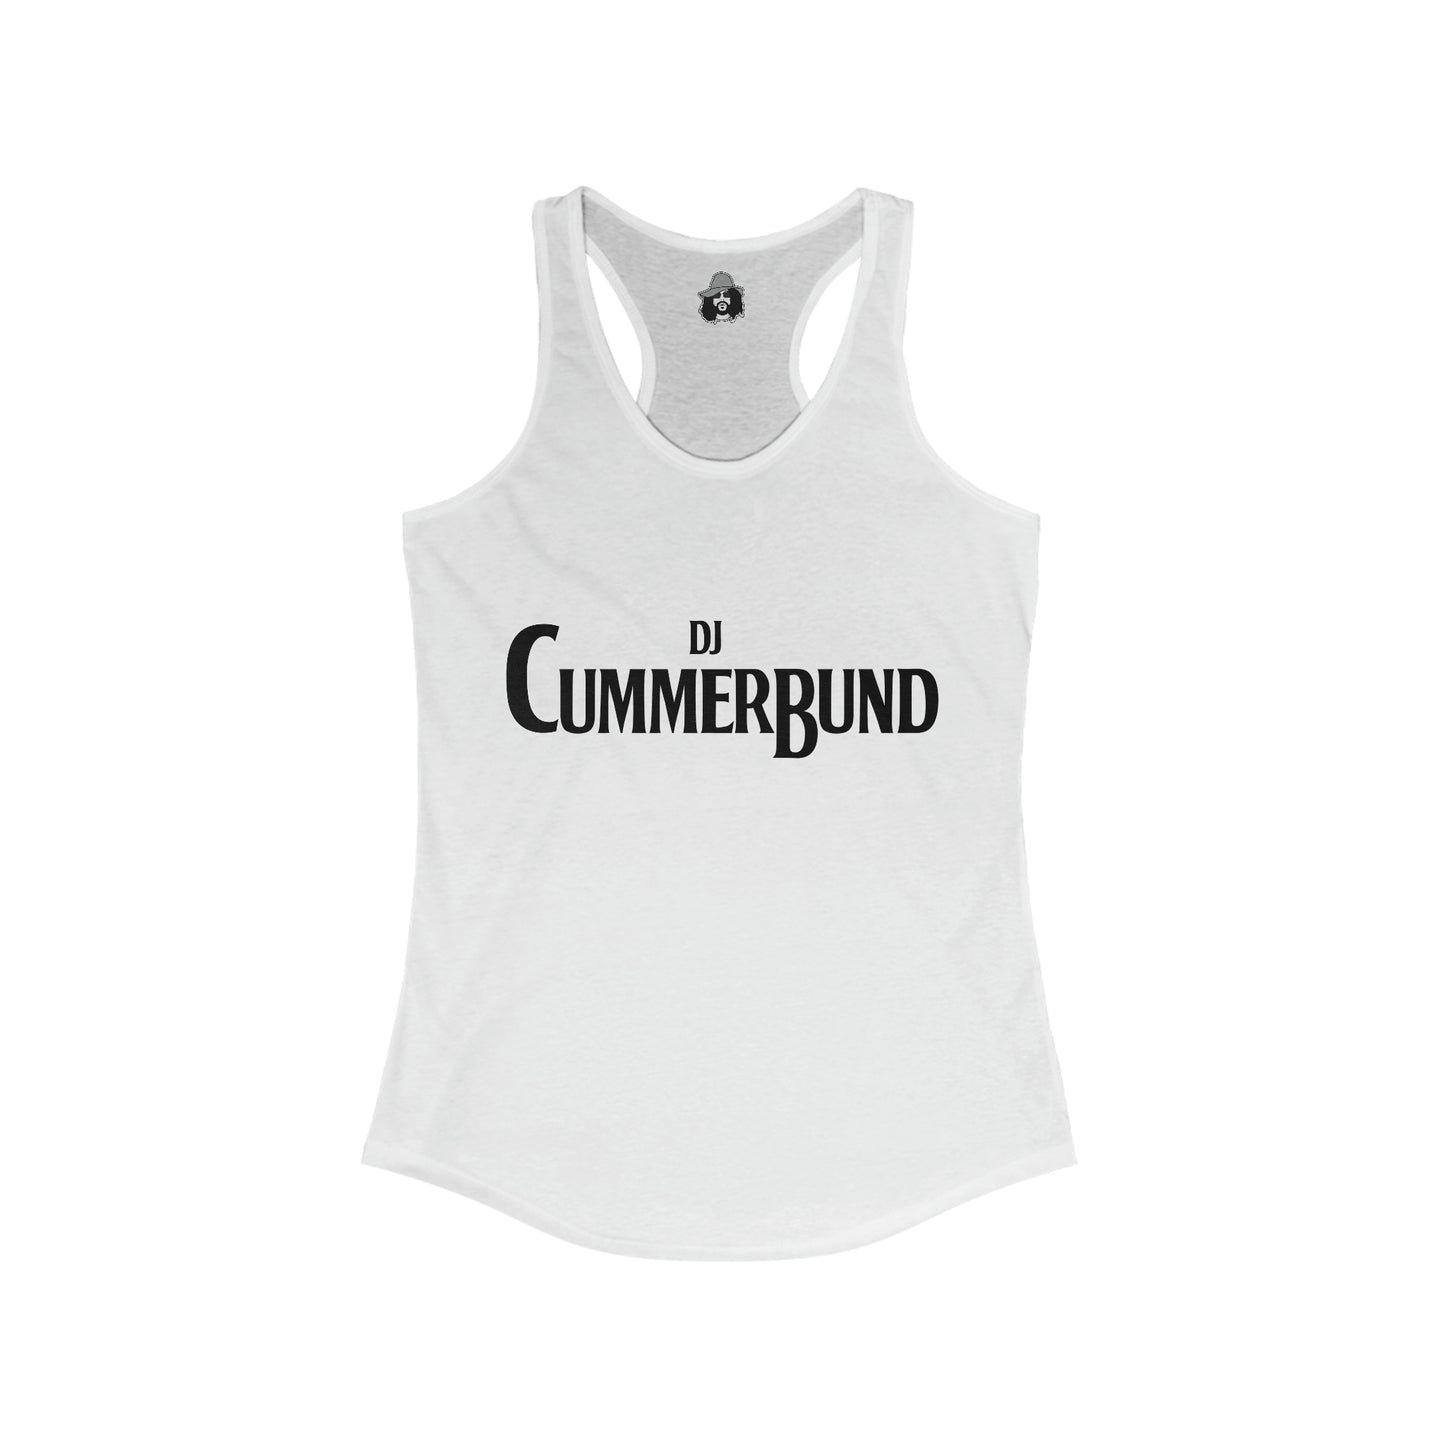 All You Need Is Cummerbund Light Women's Cut Tank Top